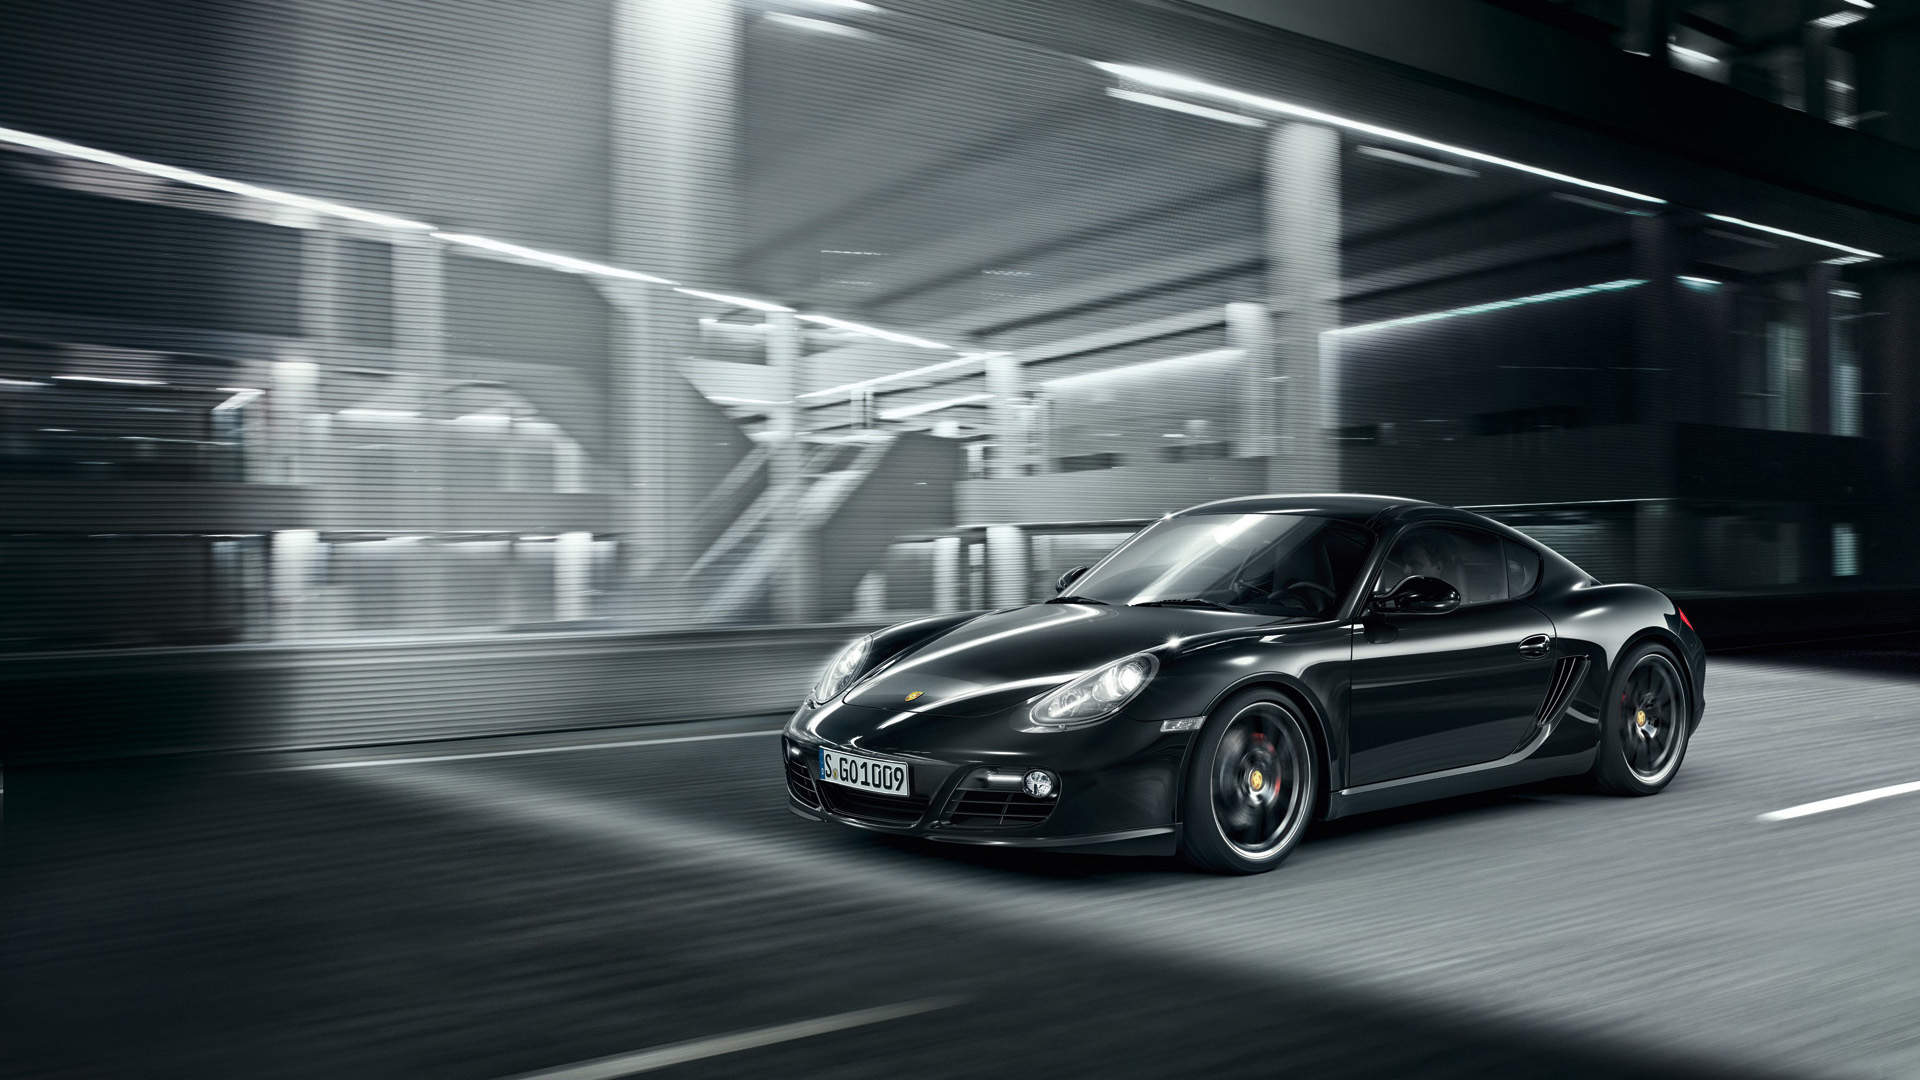 Porsche Cayman S Black Edition - HD Wallpaper 